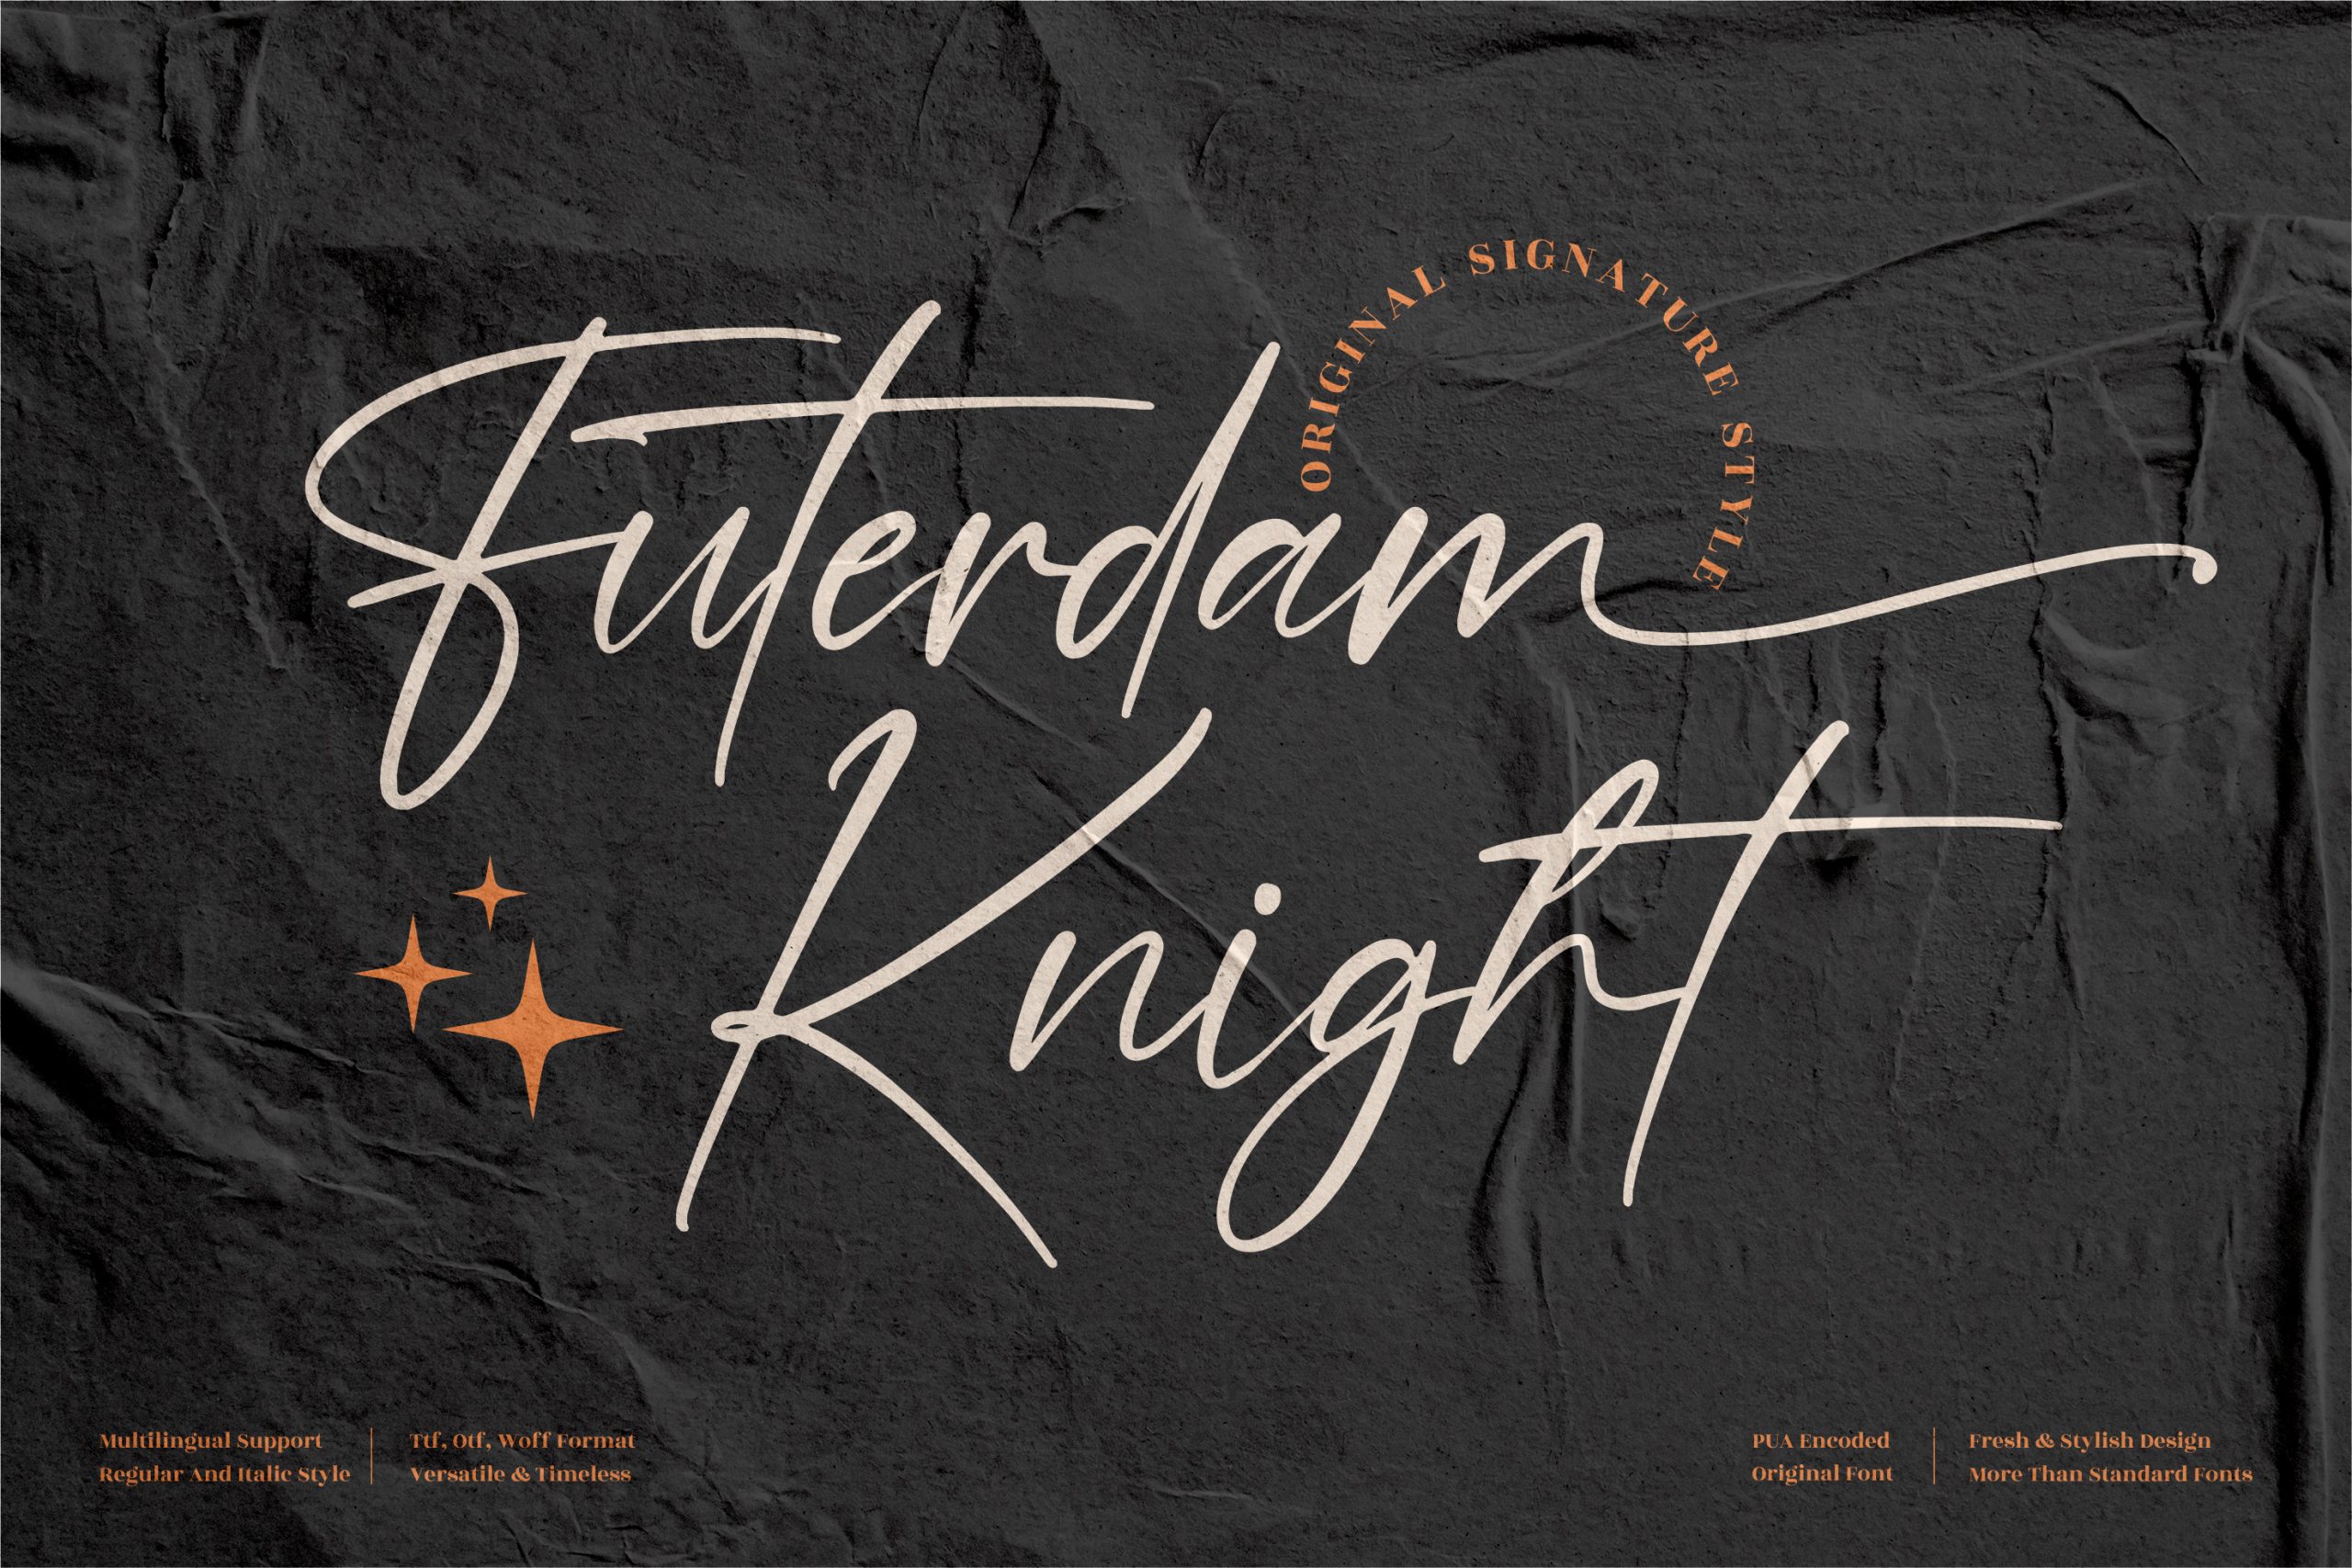 Futerdam Knight Script Font